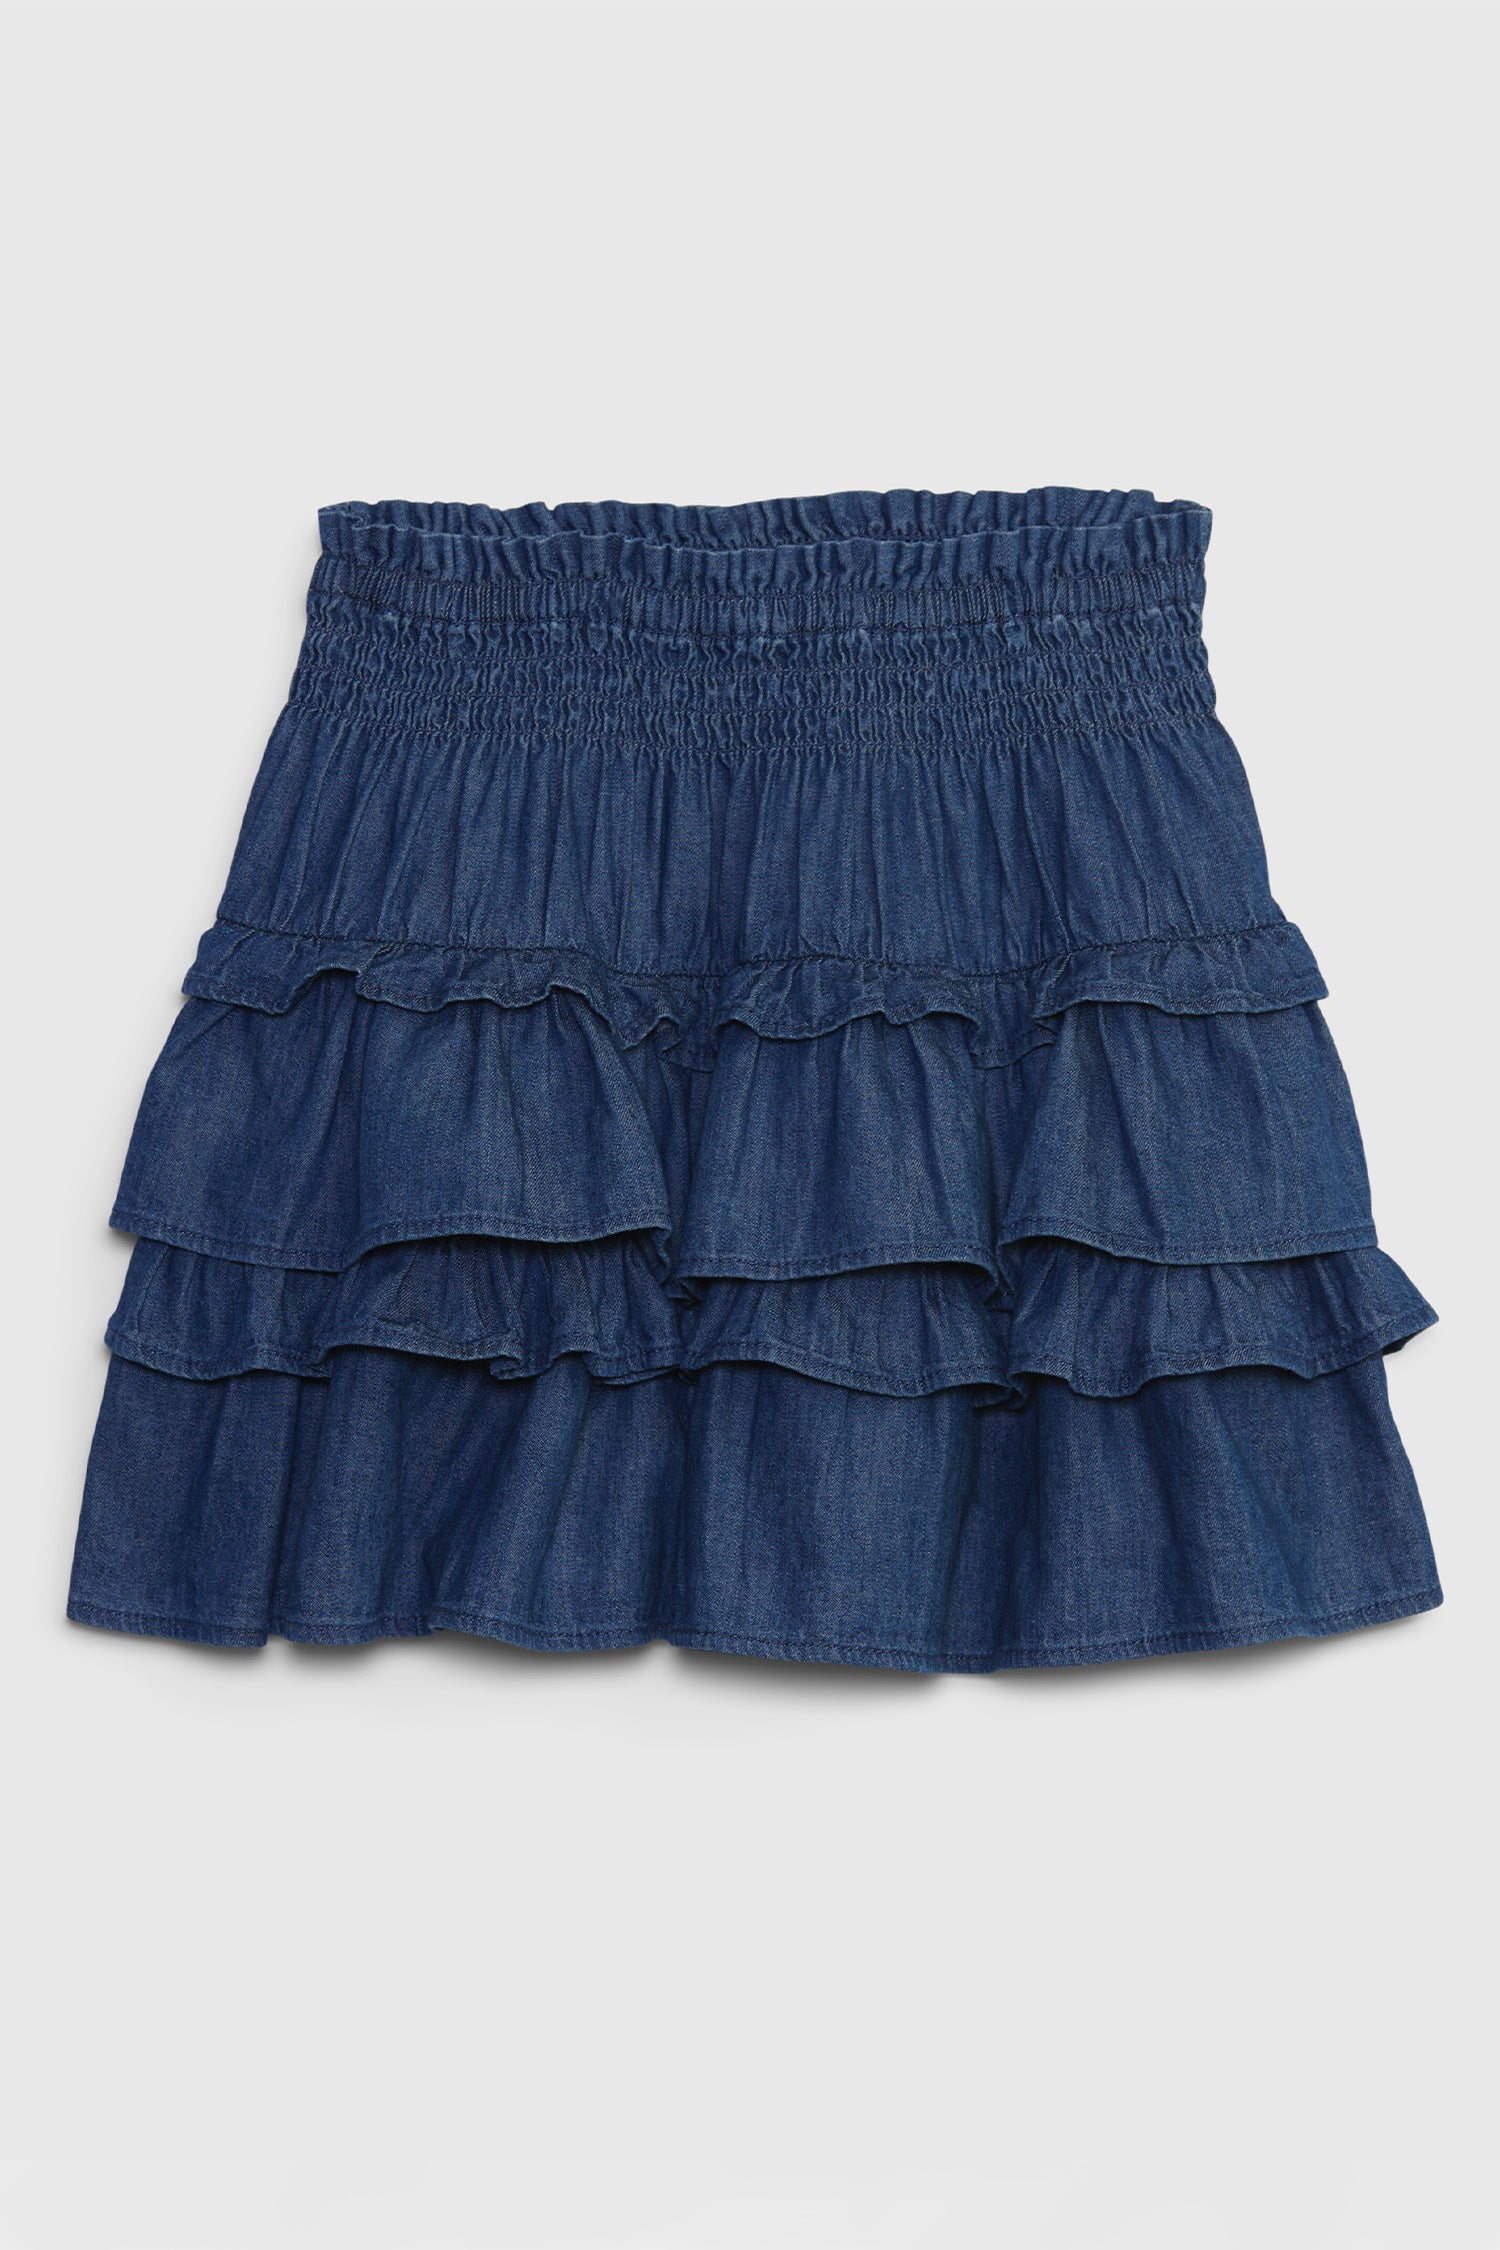 Kids denim ruffle mini skirt with smocked waist and ruffle skirt